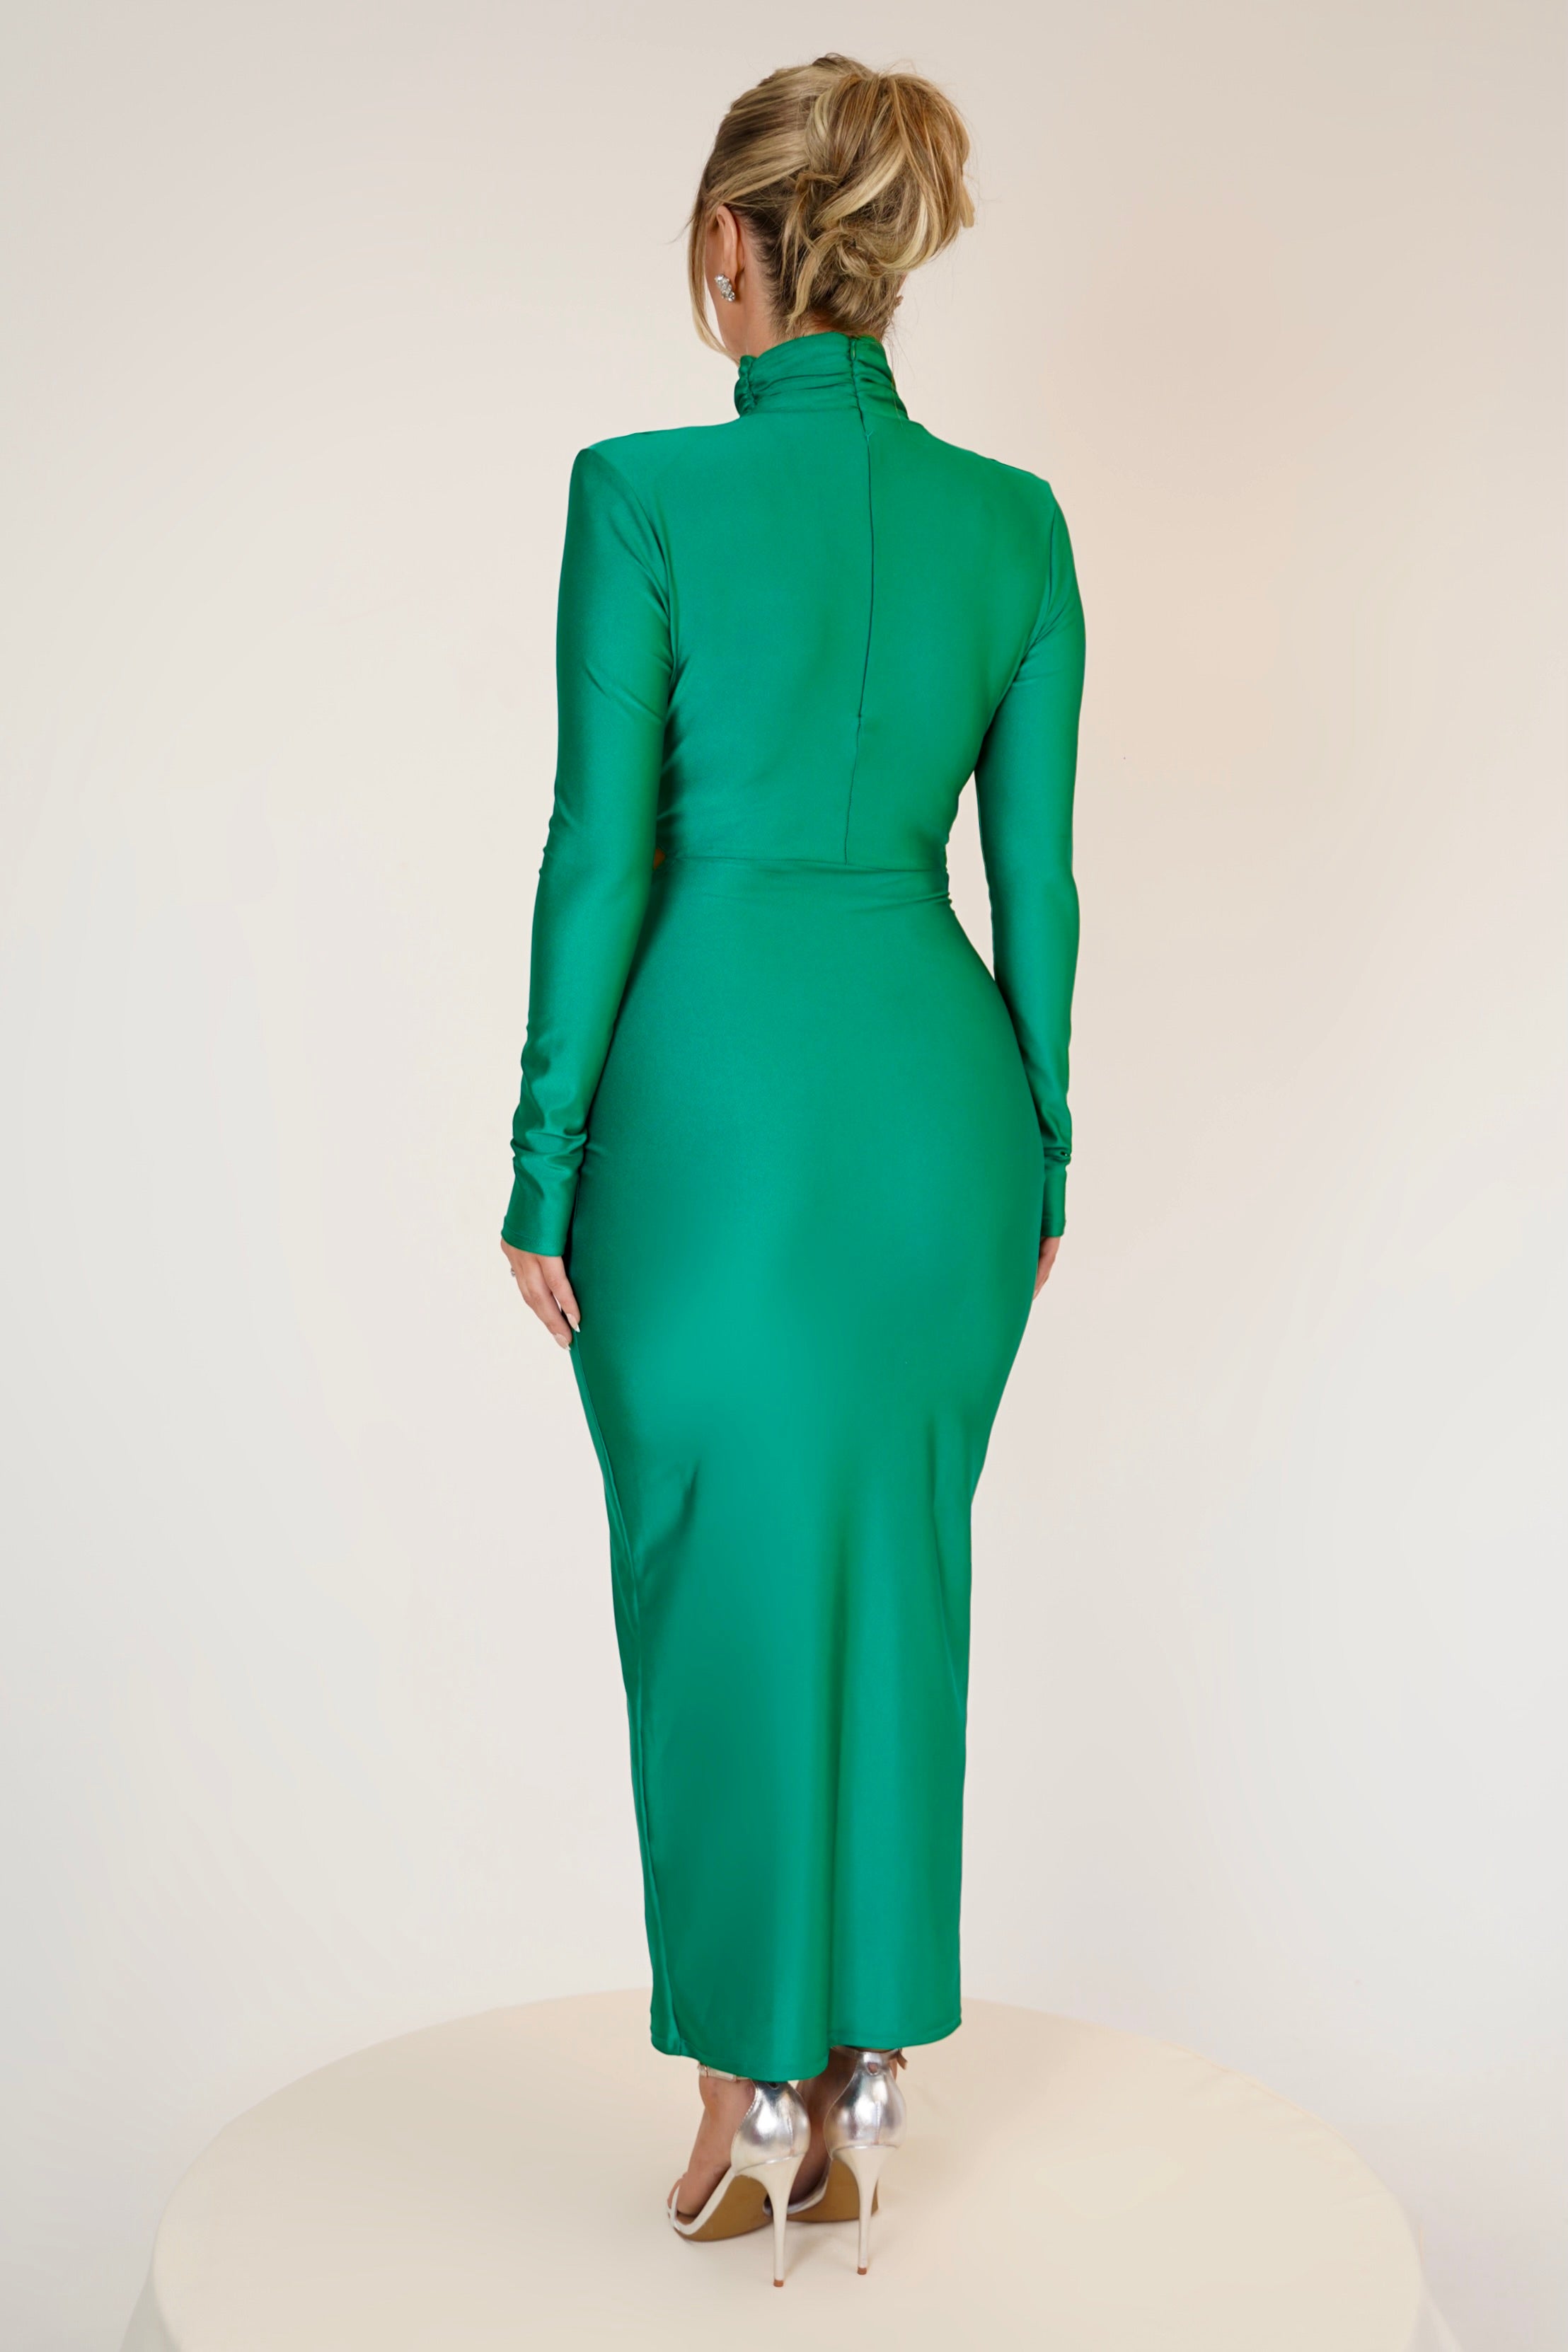 Cecilia Green Dress